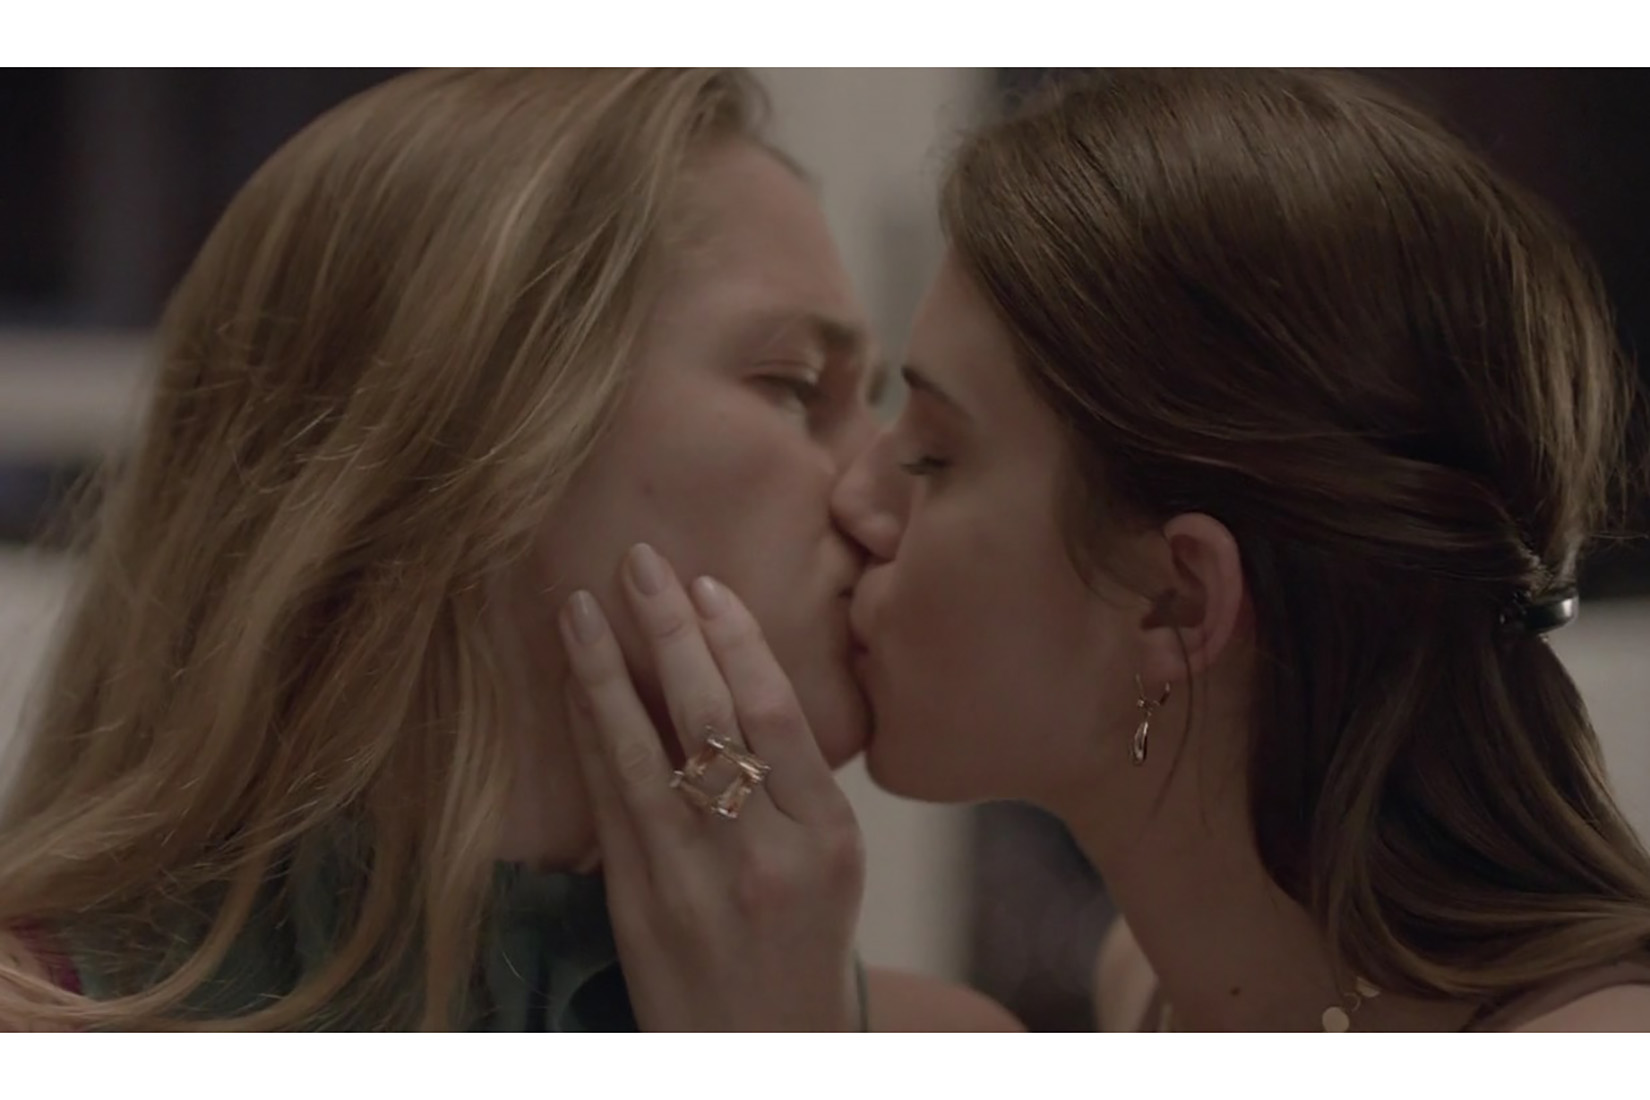 Топ-3 фильма про лесбийскую любовь, которые вам точно стоит посмотреть